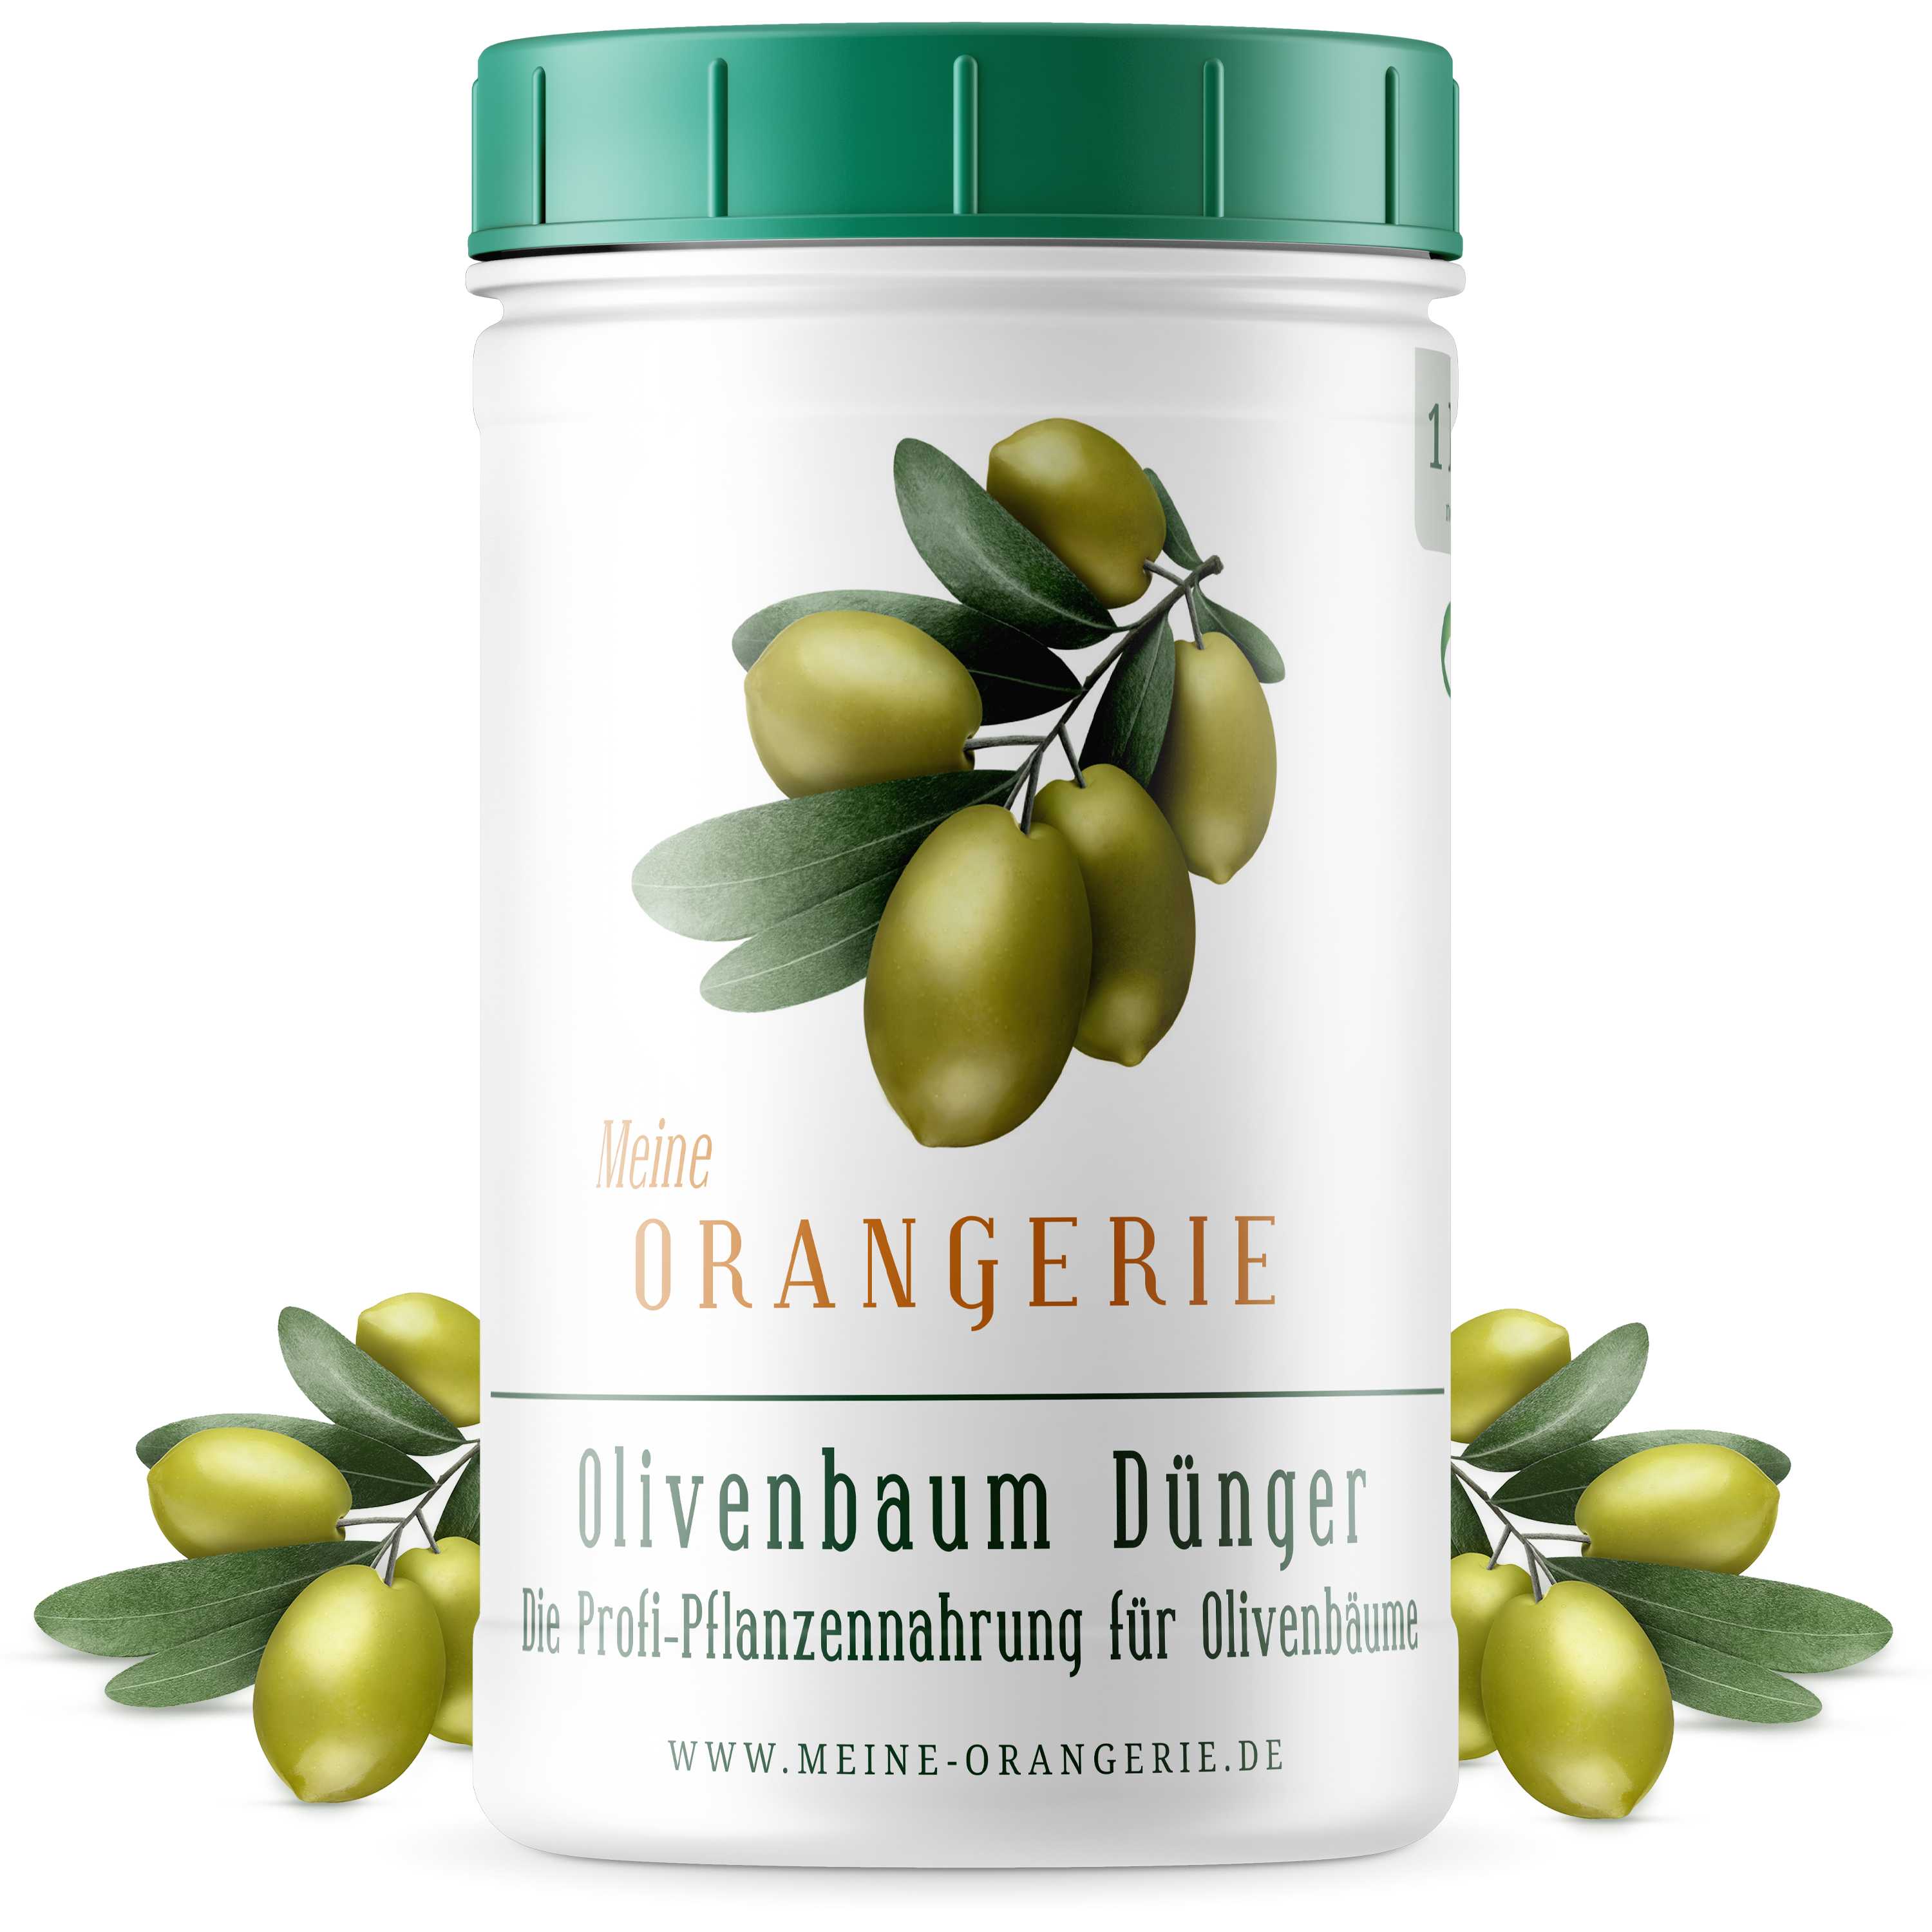 Meine Orangerie Olivendünger [1kg] - Premium Pflanzendünger für Olivenbäume